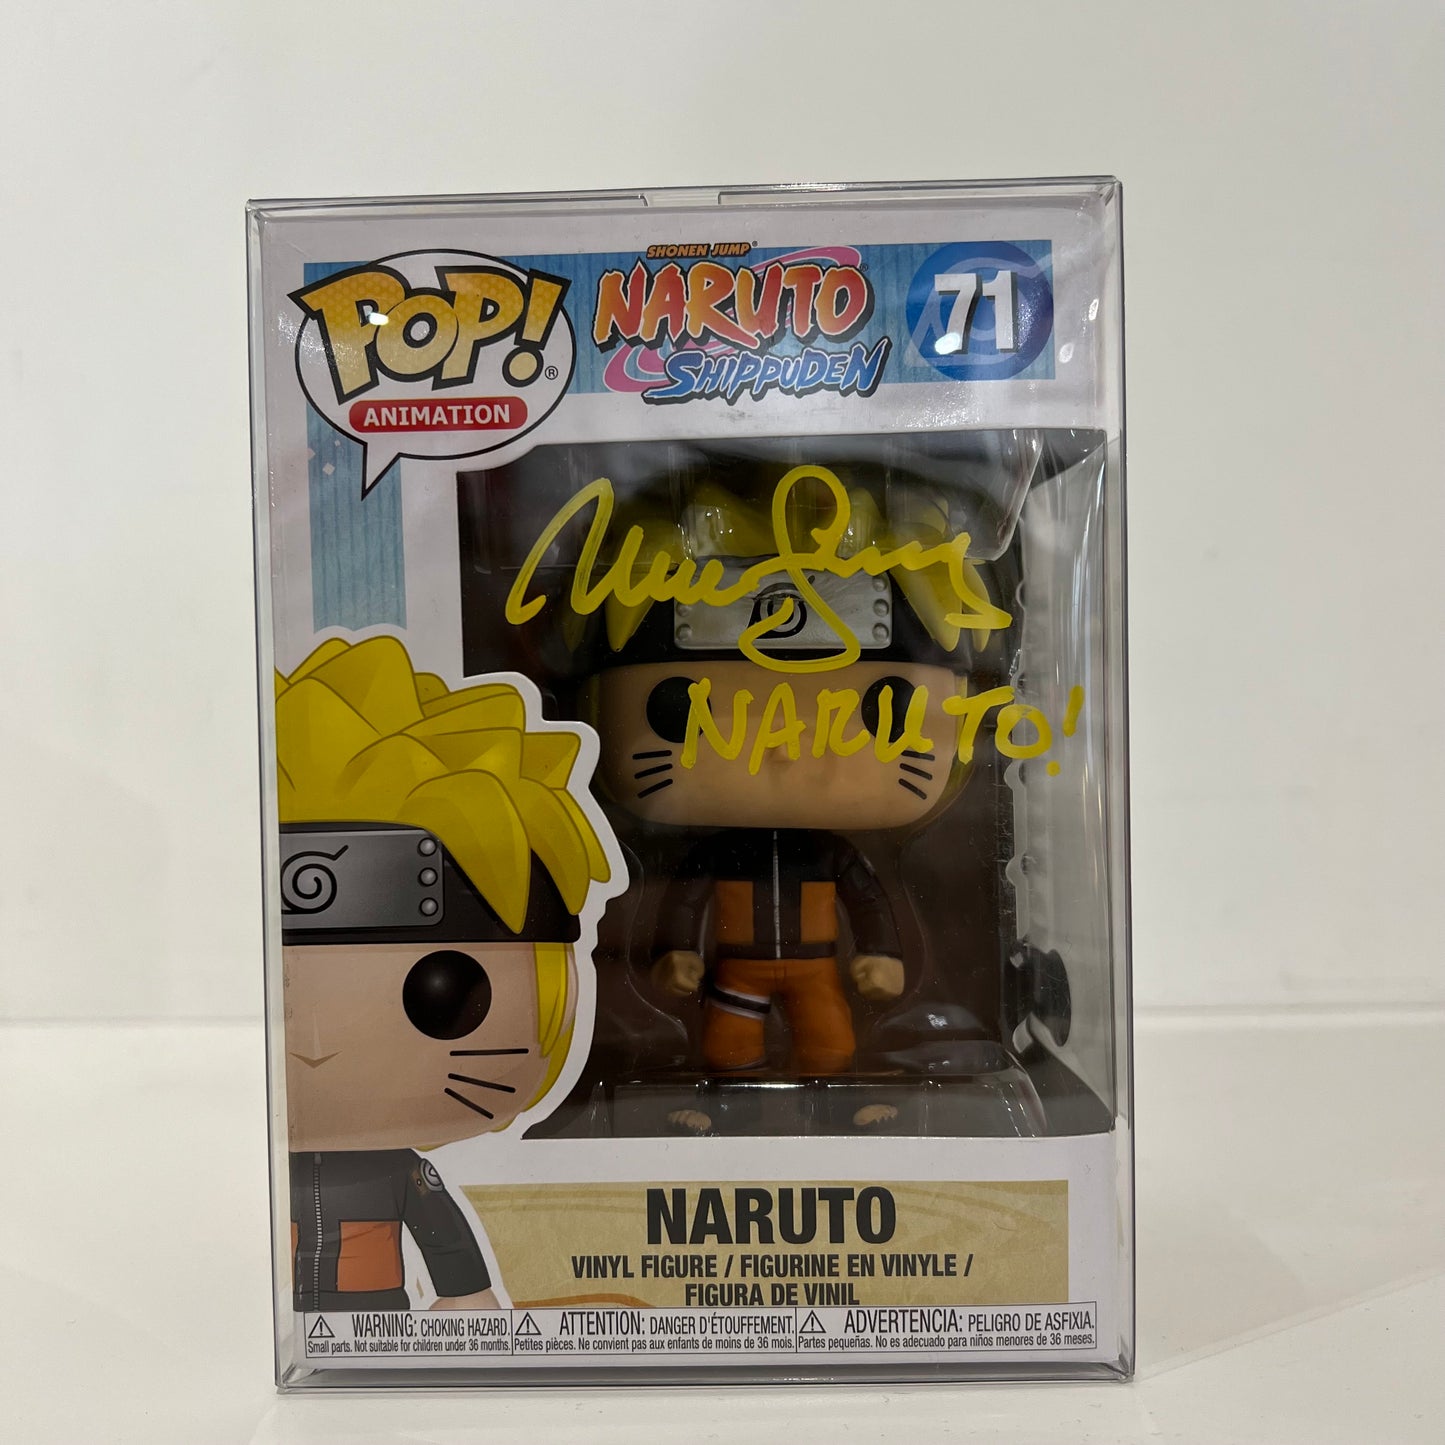 Funko Pop! Naruto Shippuden - Naruto #71 signature with Maile Flanagan